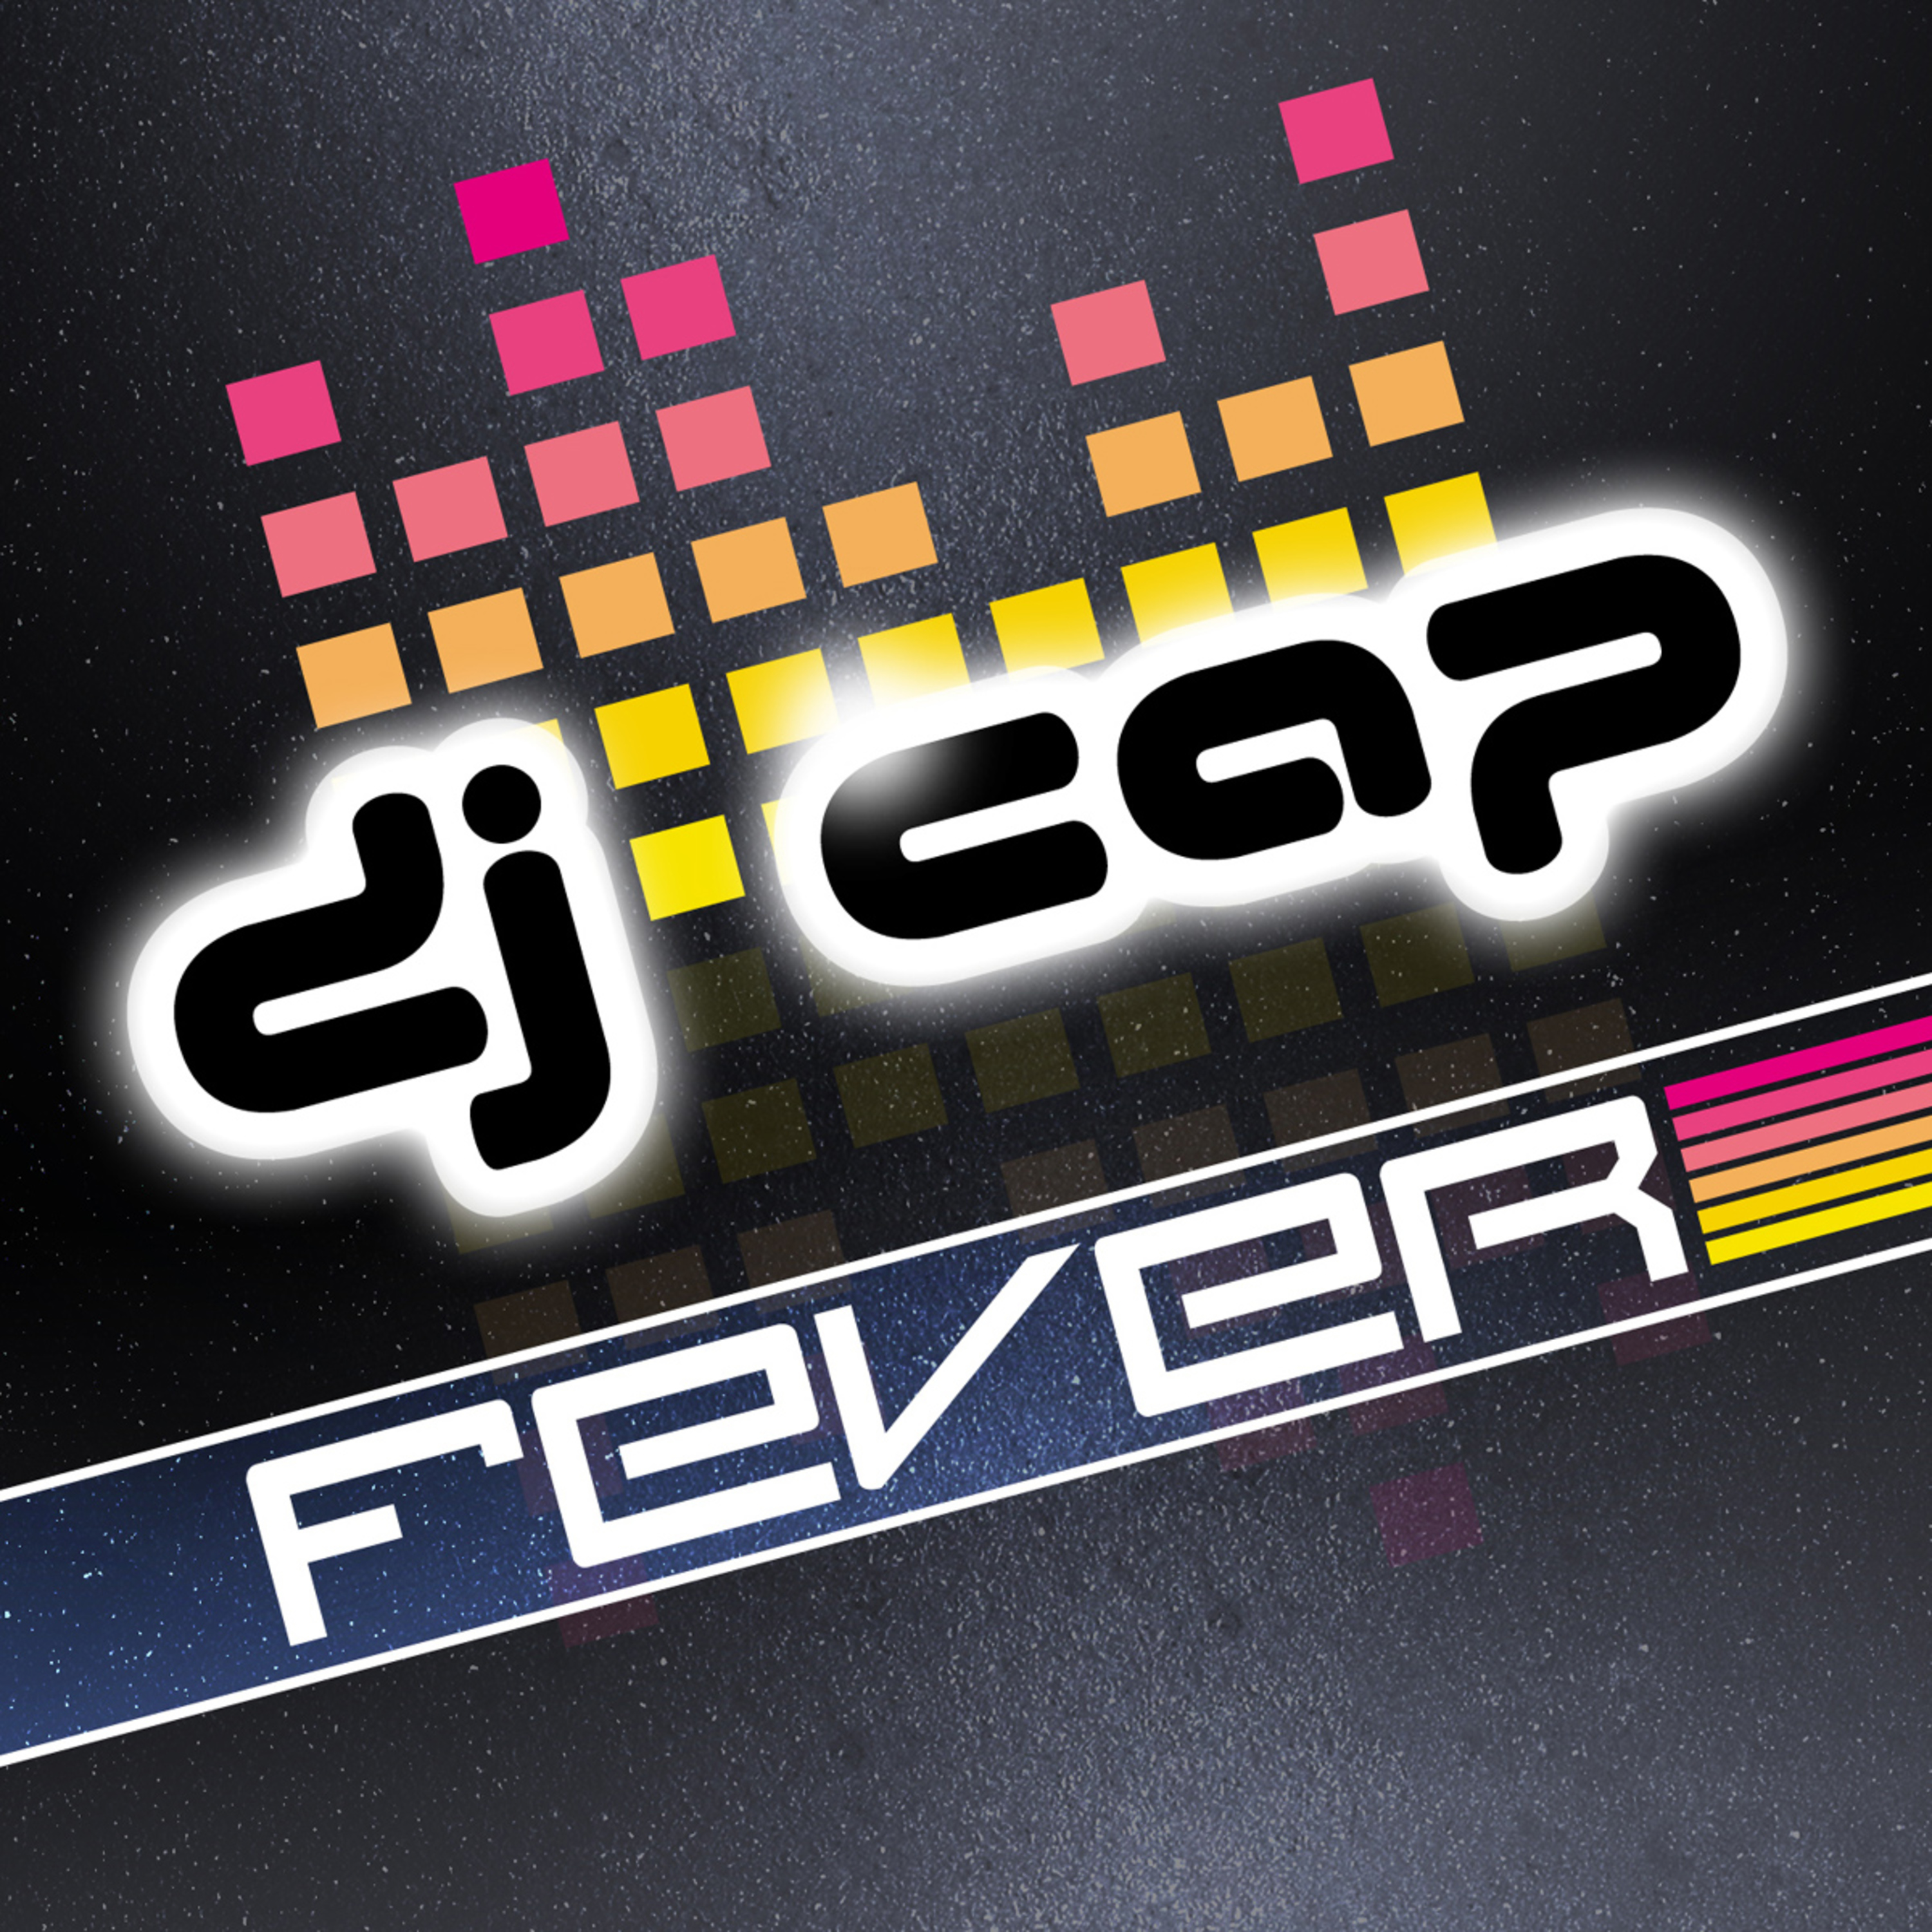 Fever (e-Strella Remix Edit)